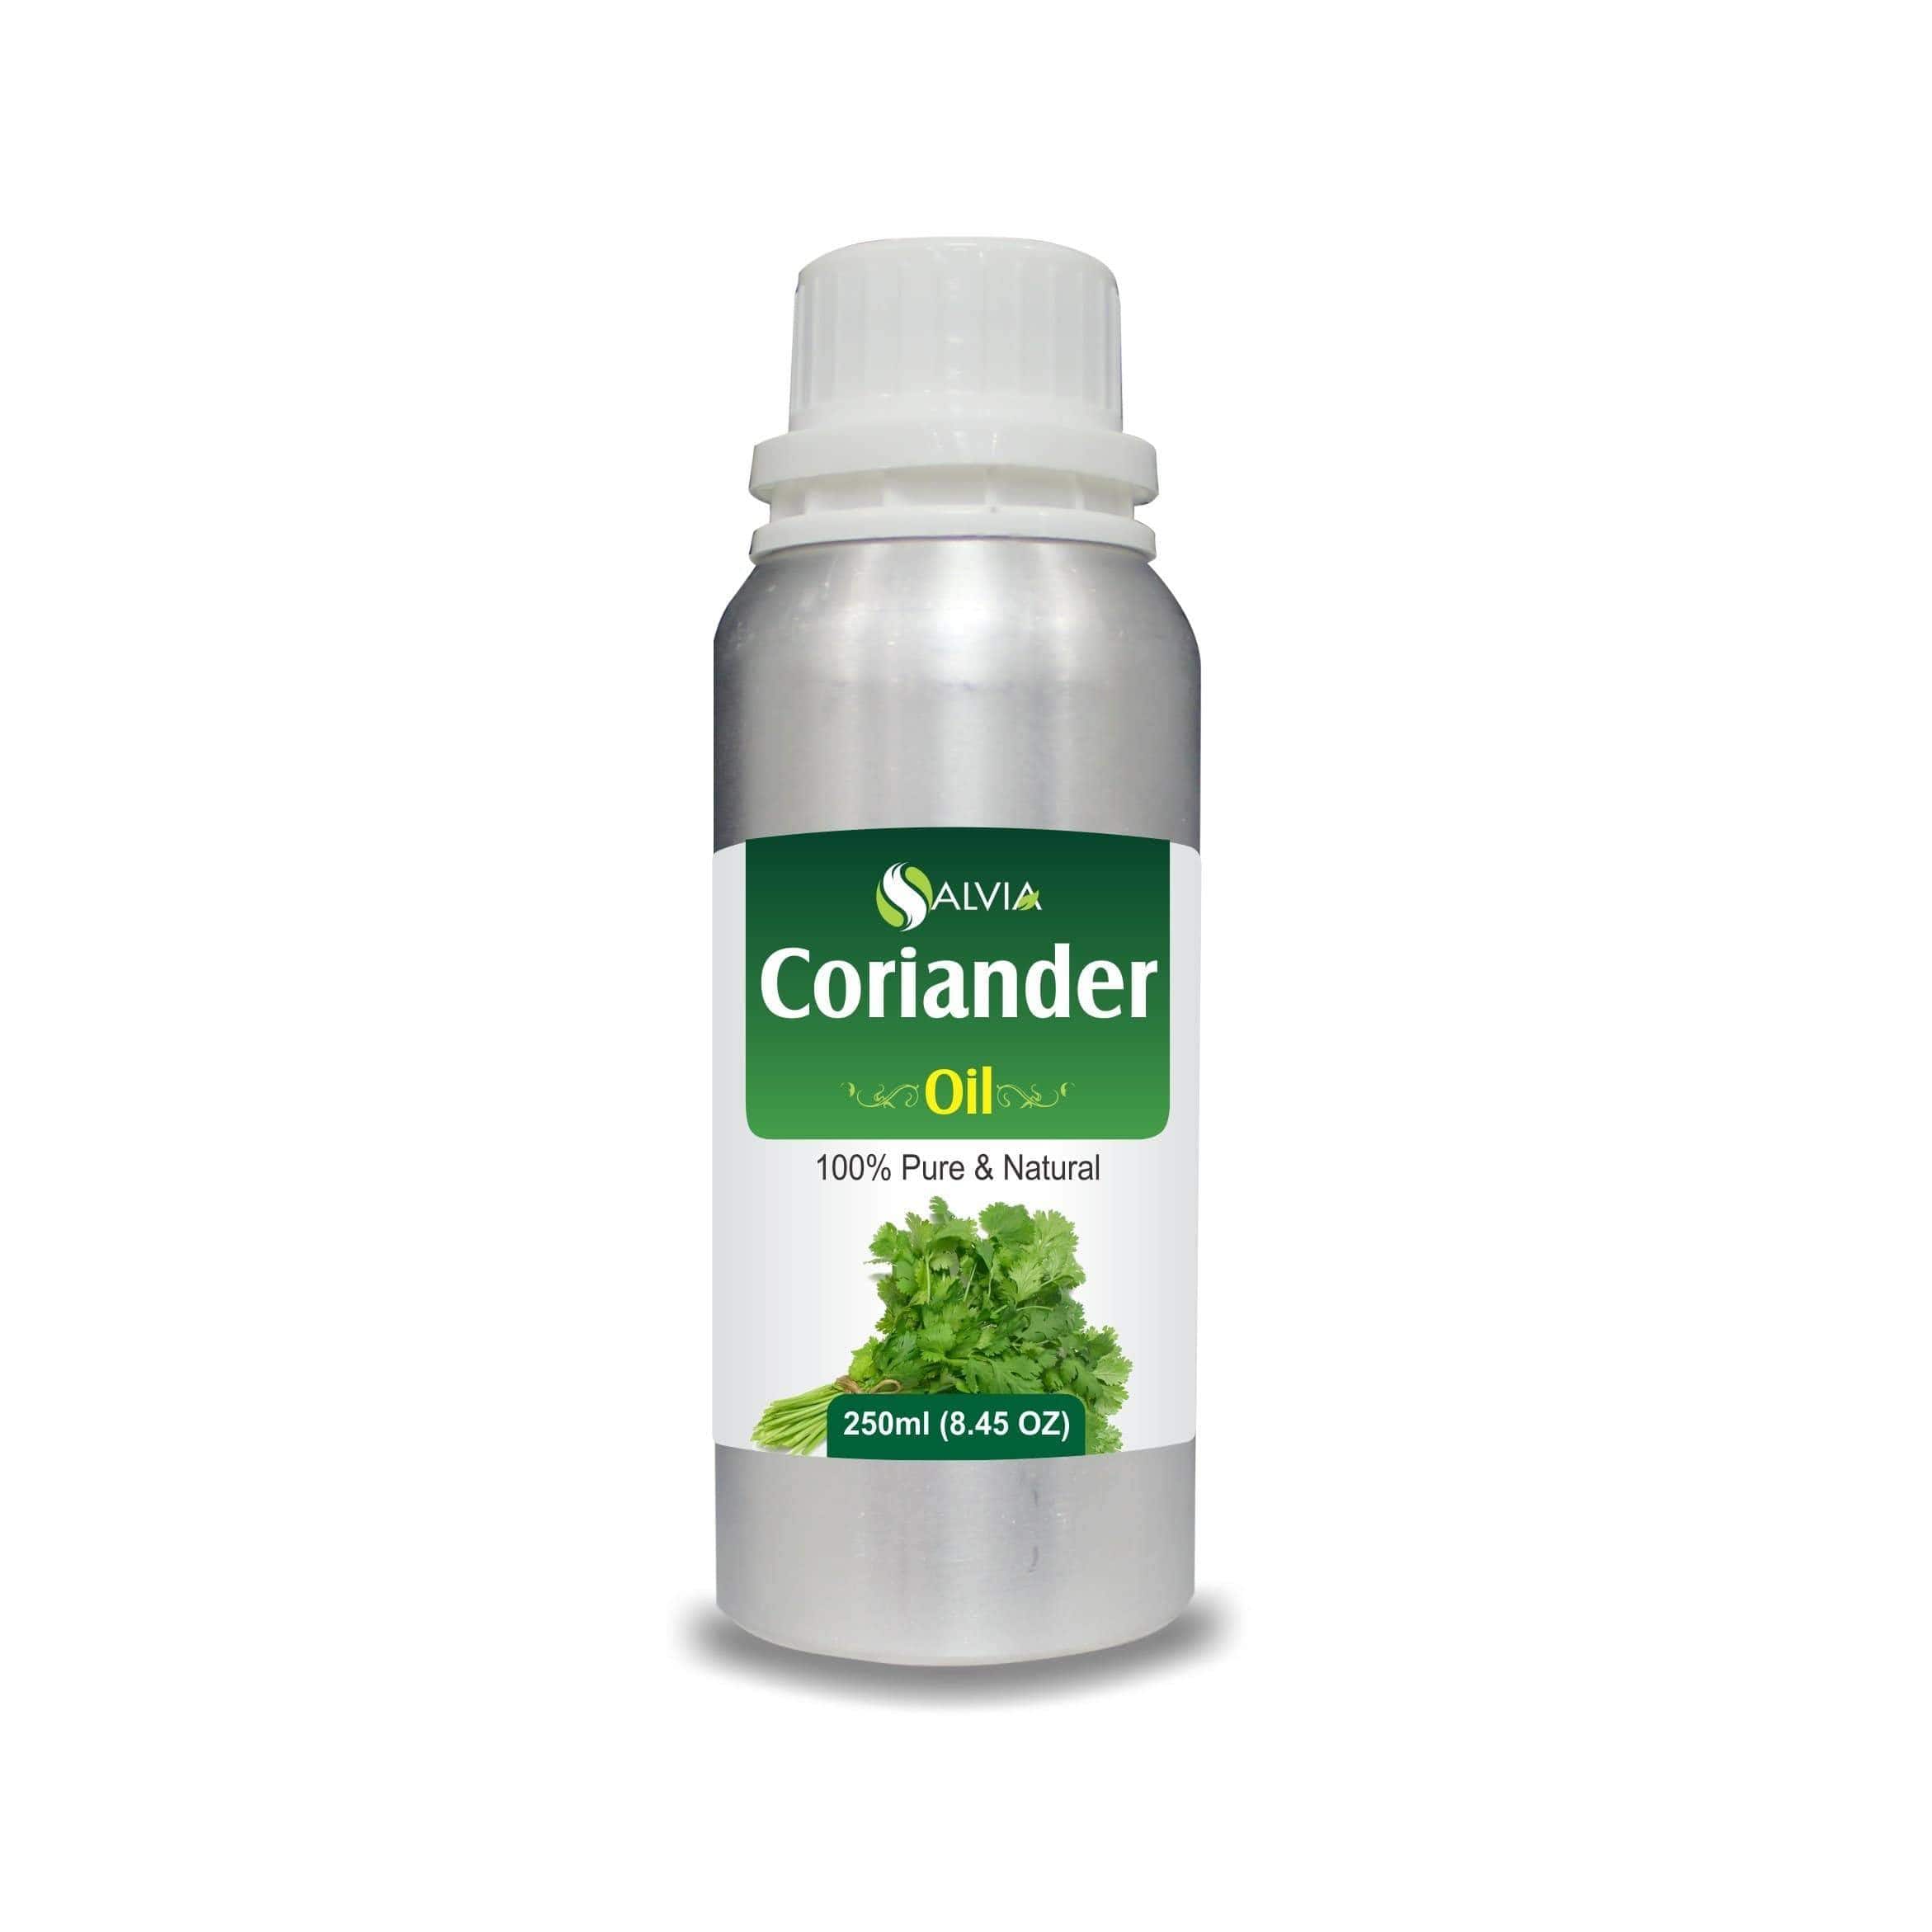 coriander oil price